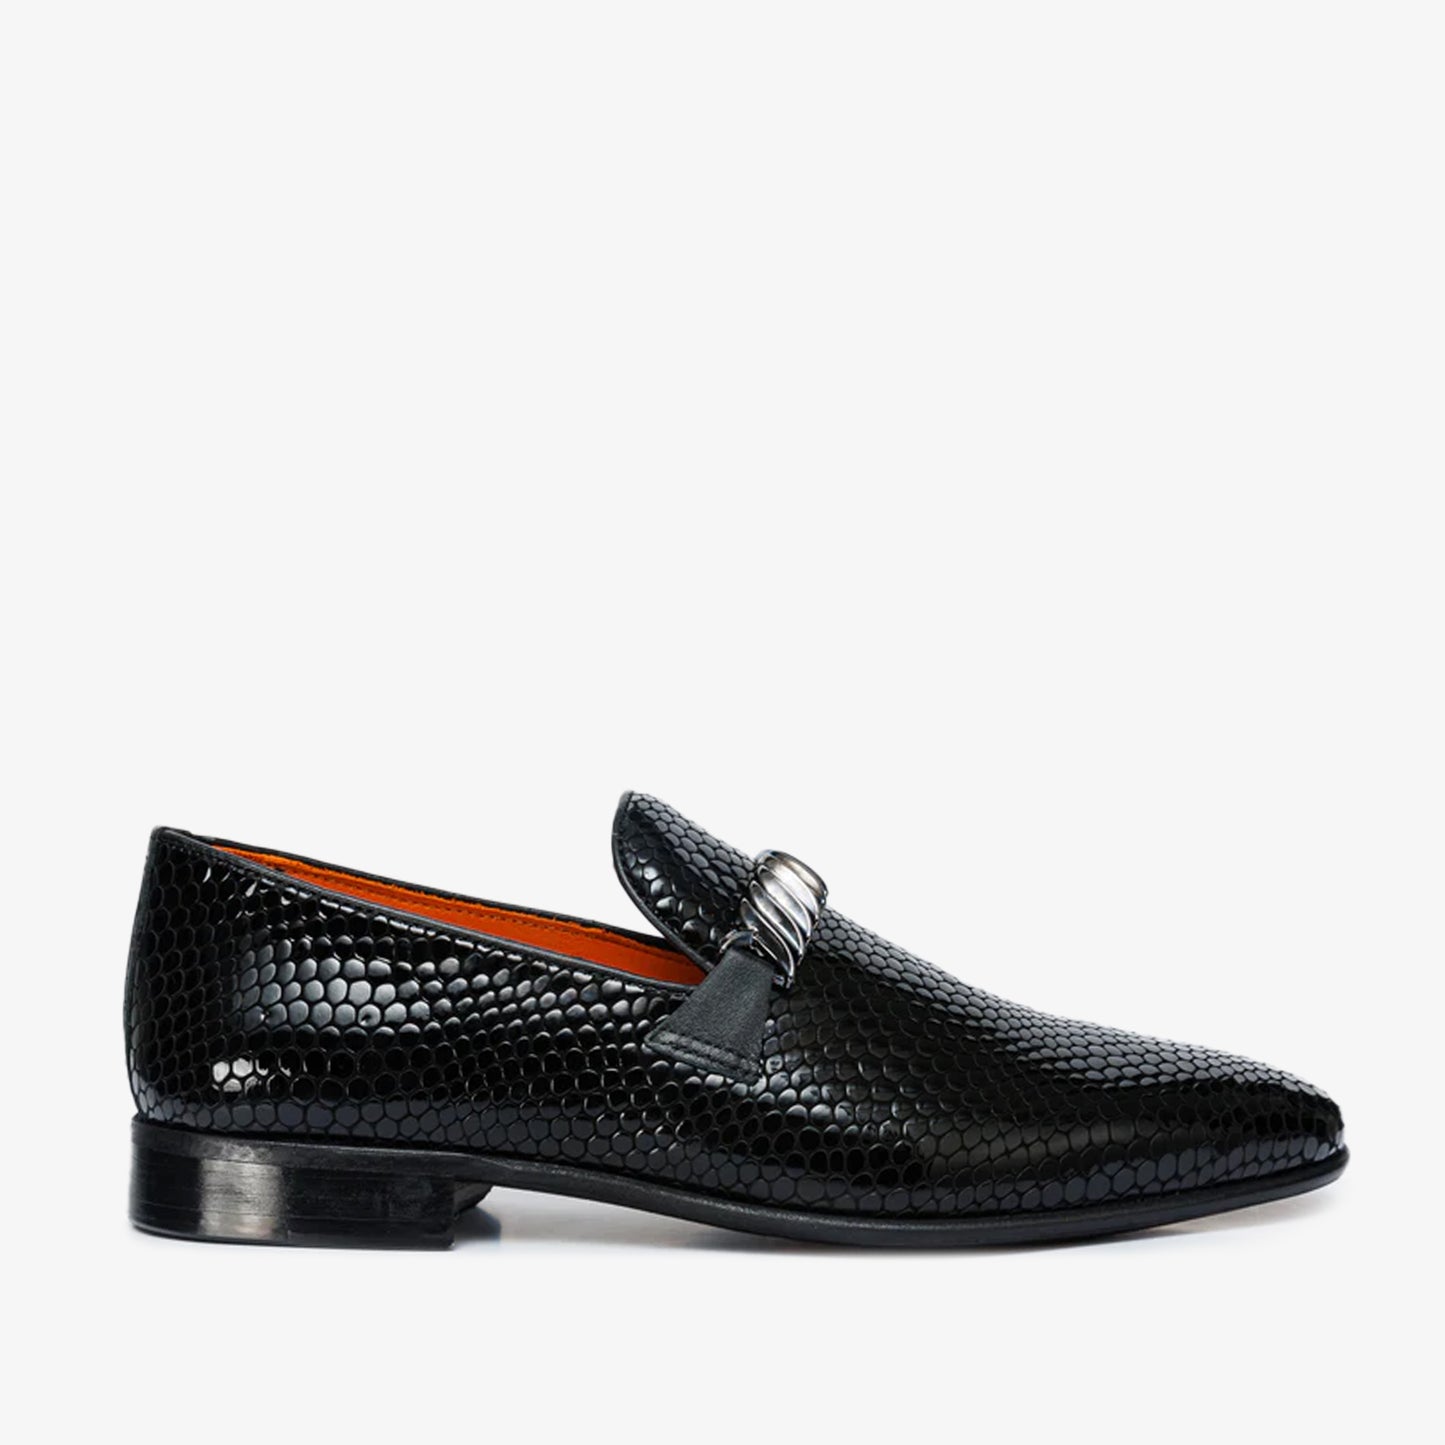 The King Black Bit Dress Loafer Men Shoe